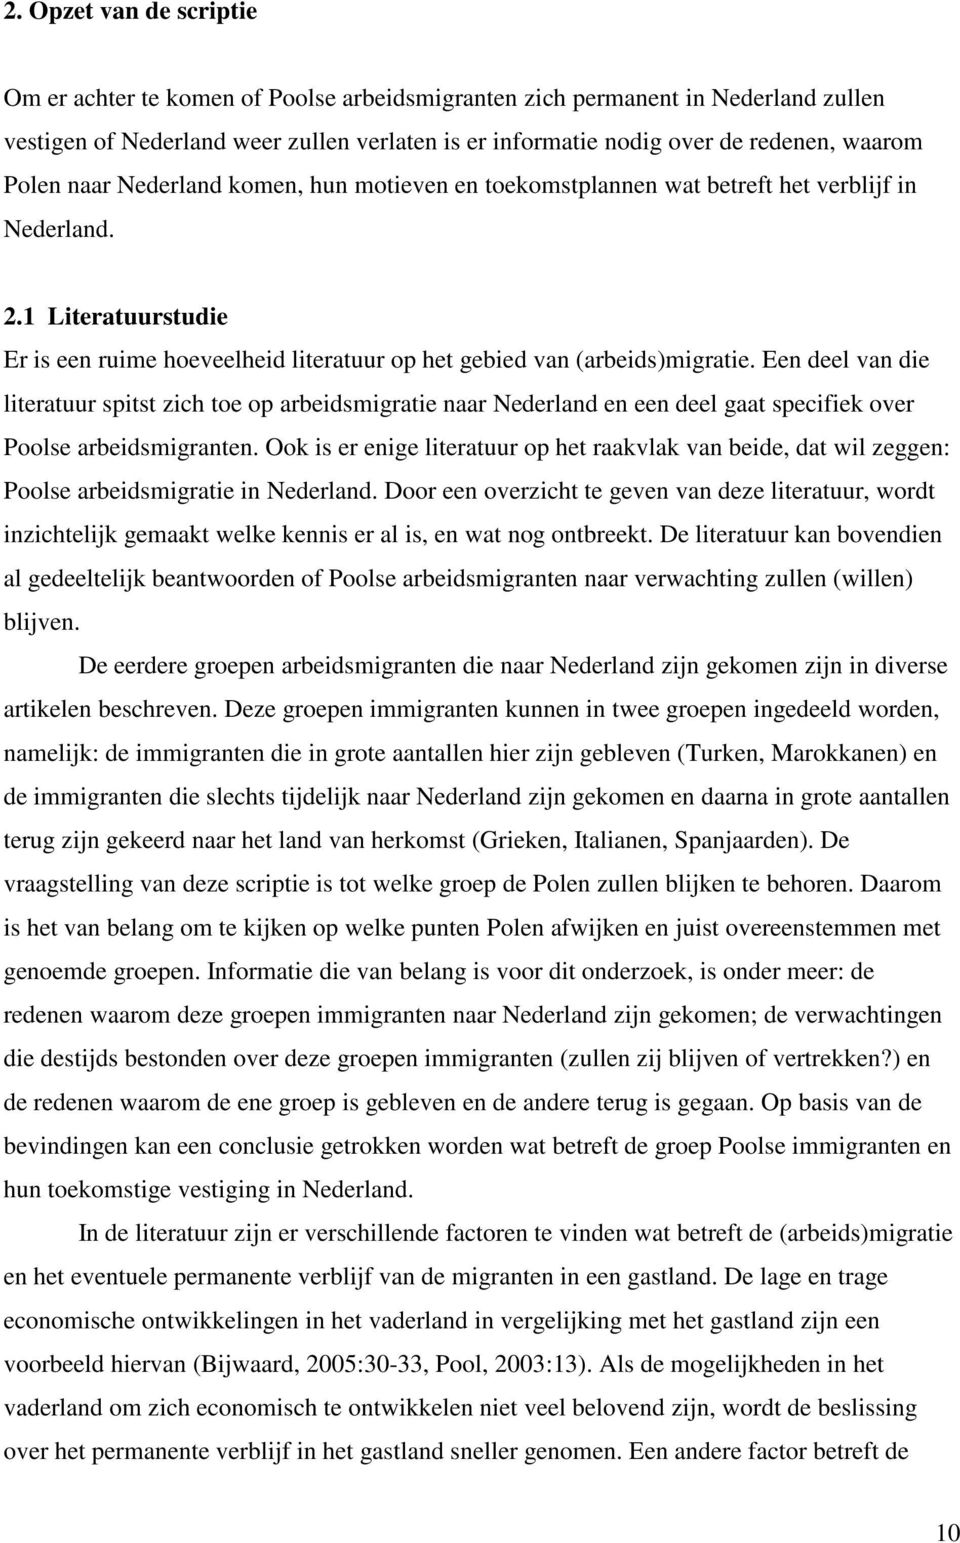 Een deel van die literatuur spitst zich toe op arbeidsmigratie naar Nederland en een deel gaat specifiek over Poolse arbeidsmigranten.